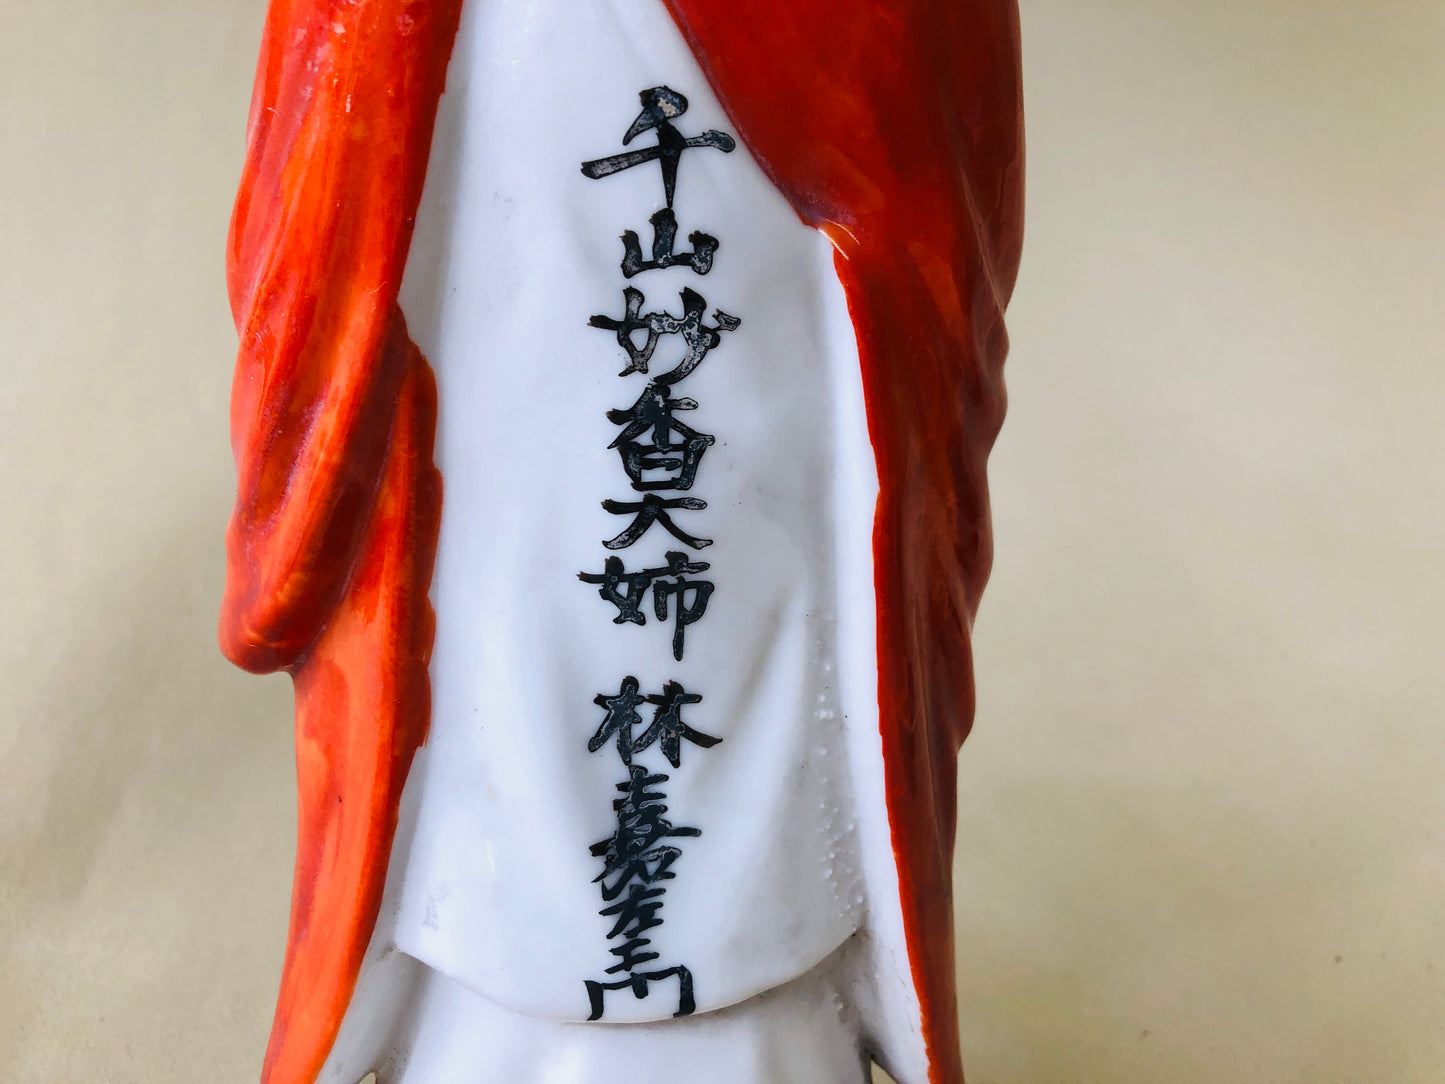 Y4362 STATUE Jizo Bodhisattva figure ceramics signed orange Japan antique